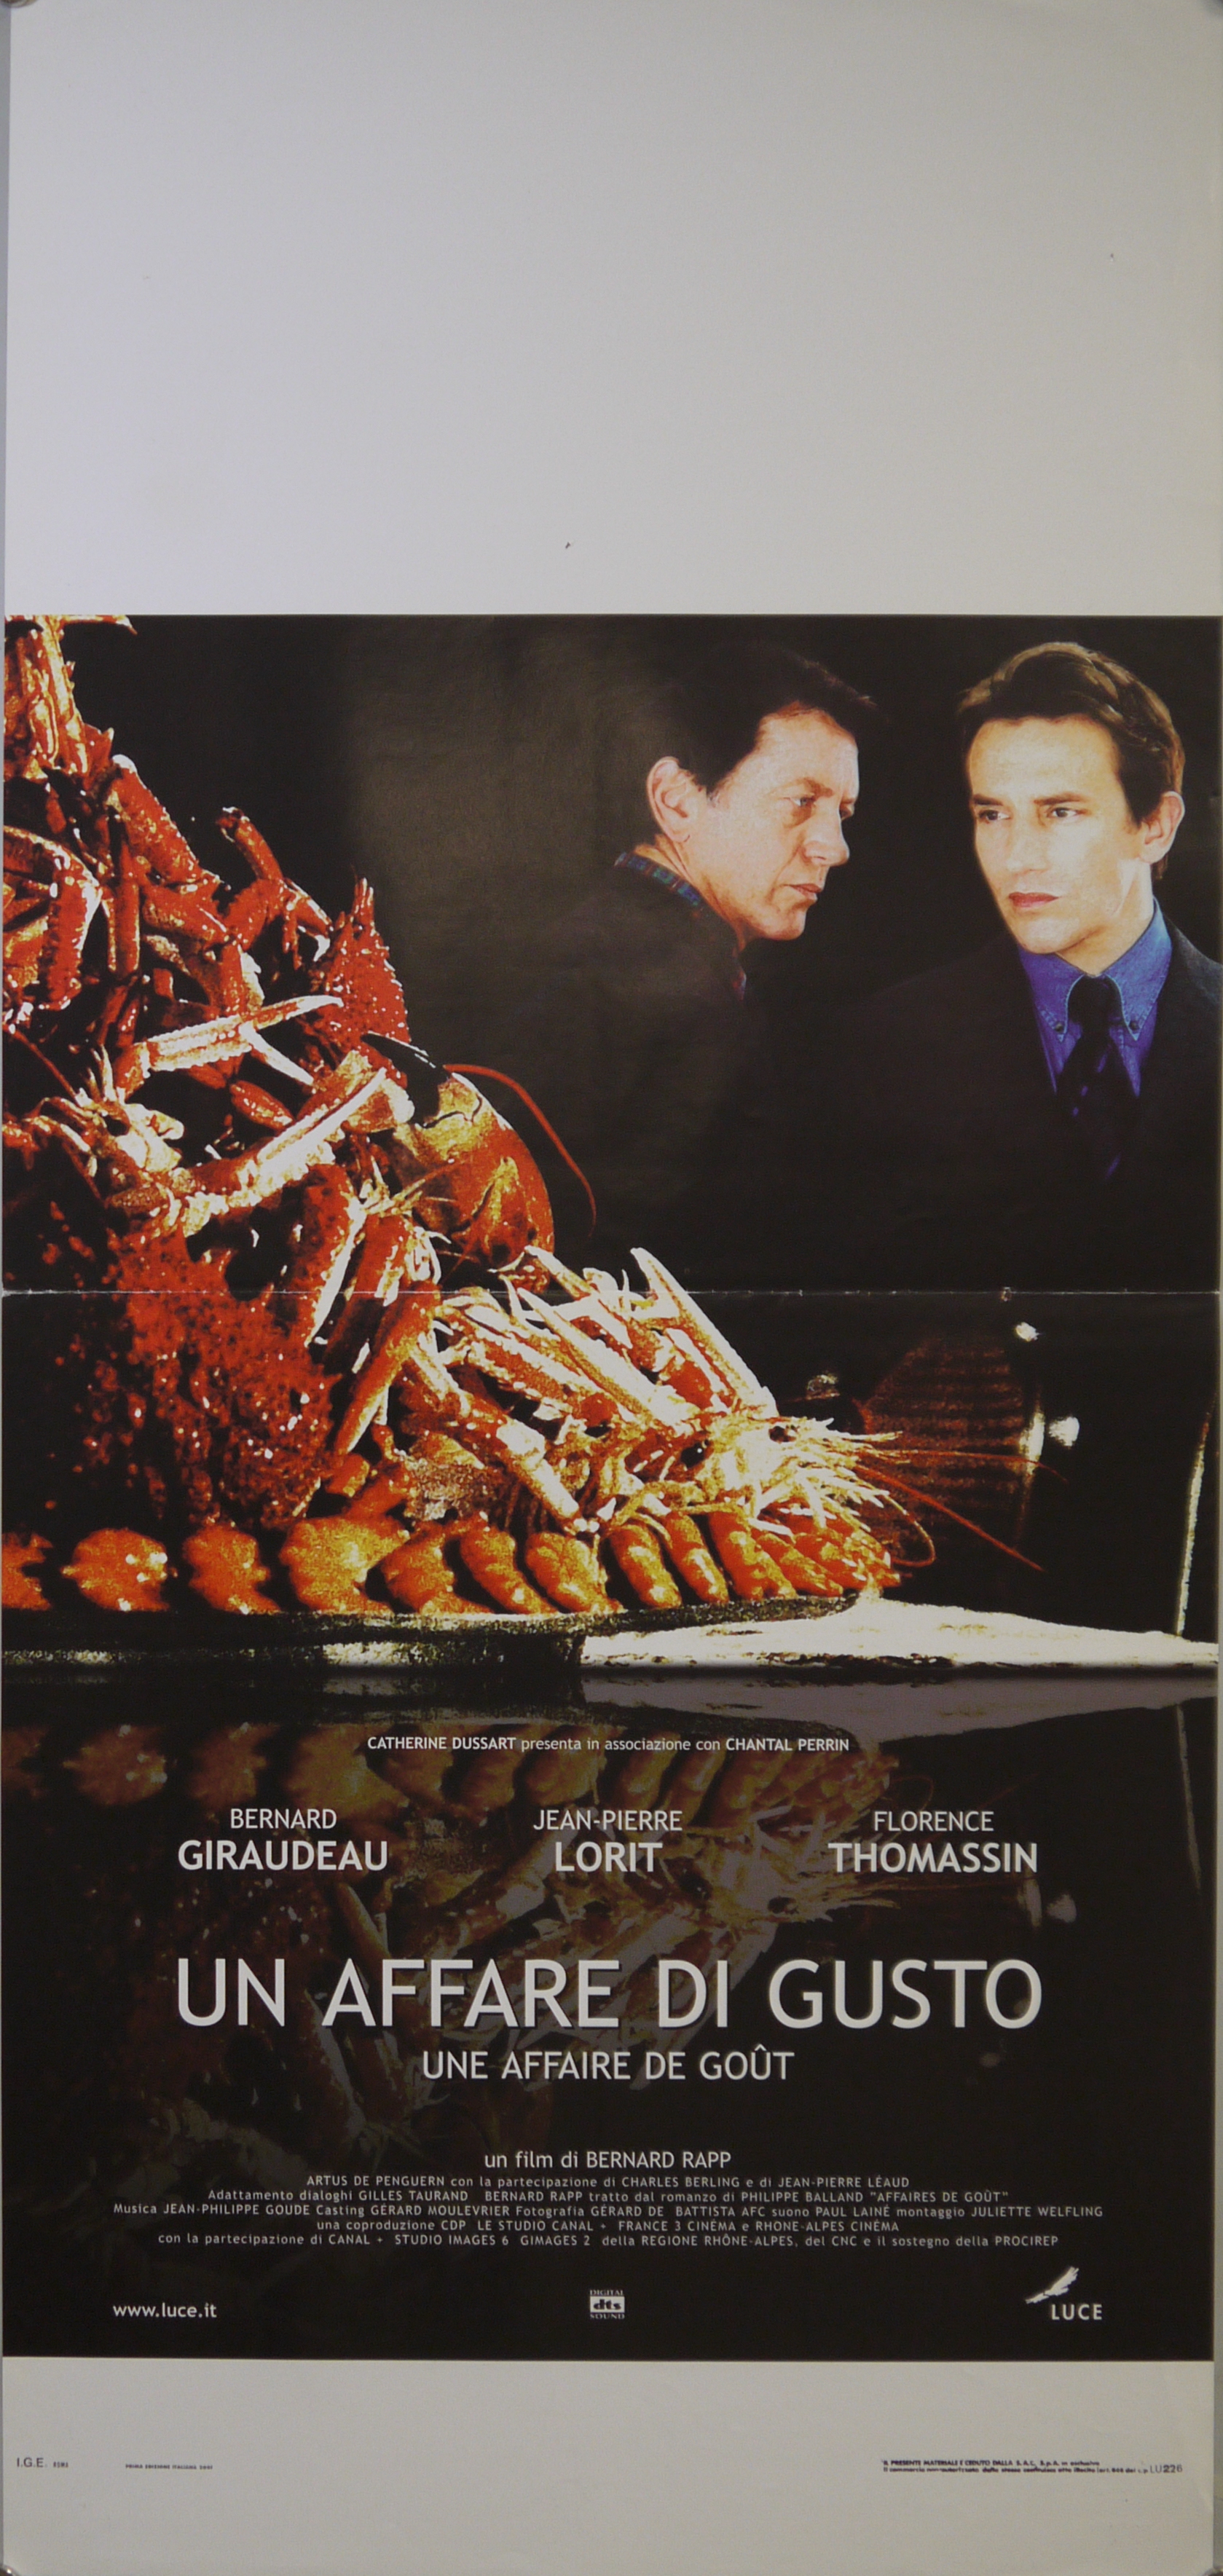 Frédéric Delamont (Bernard Giraudeau) e Nicolas Rivière (Jean-Pierre Lorit) davanti a un tavolo su cui campeggia una composizione di molluschi (locandina) - ambito francese (inizio XXI)